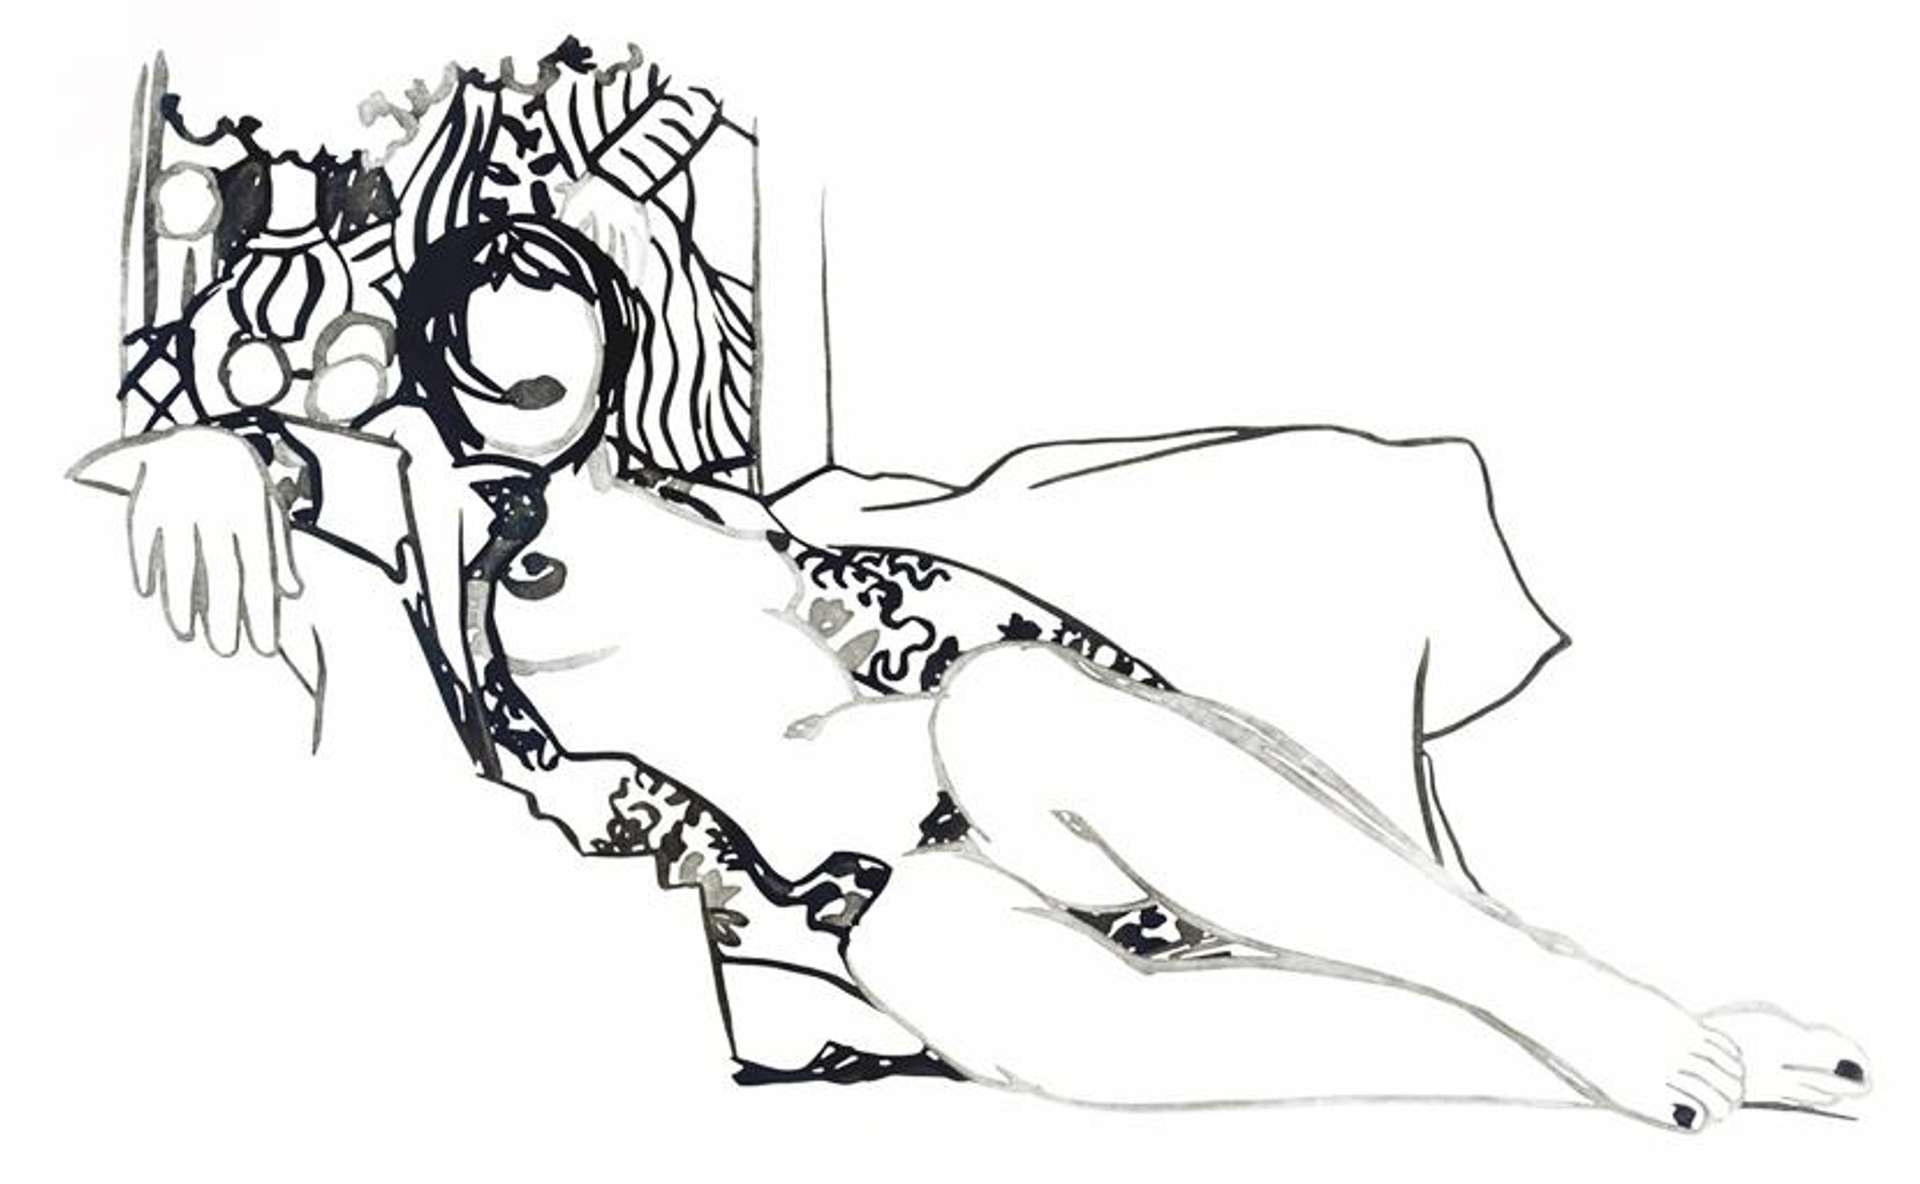 An enamel on cut-out steel work by Tom Wesselmann depicting a reclining female nude figure.